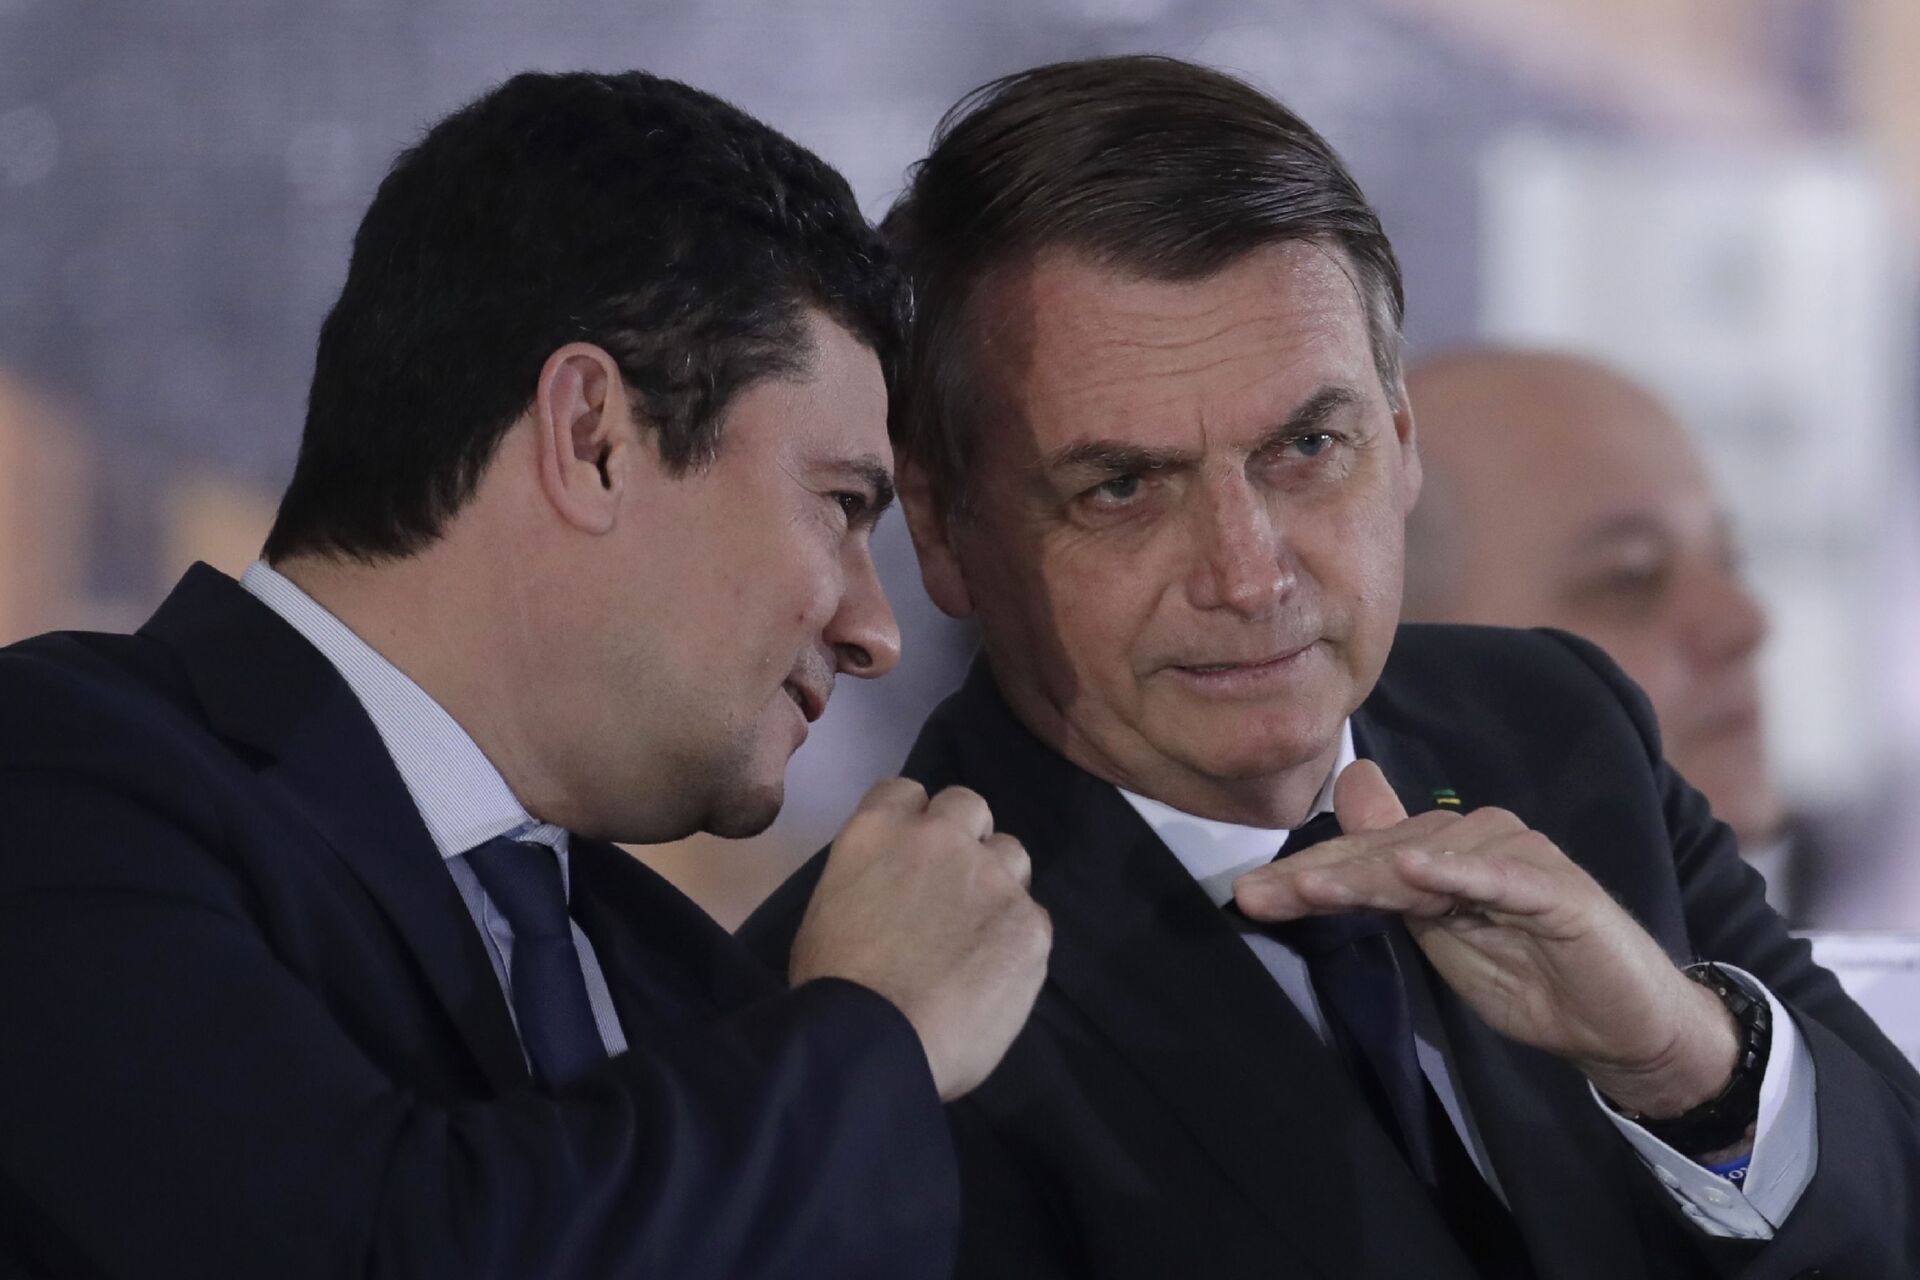 O então ministro da Justiça, Sergio Moro, e o presidente Jair Bolsonaro durante evento em Brasília em 9 de agosto de 2019, quando ainda tinham bom relacionamento e forte aliança - Sputnik Brasil, 1920, 26.11.2021